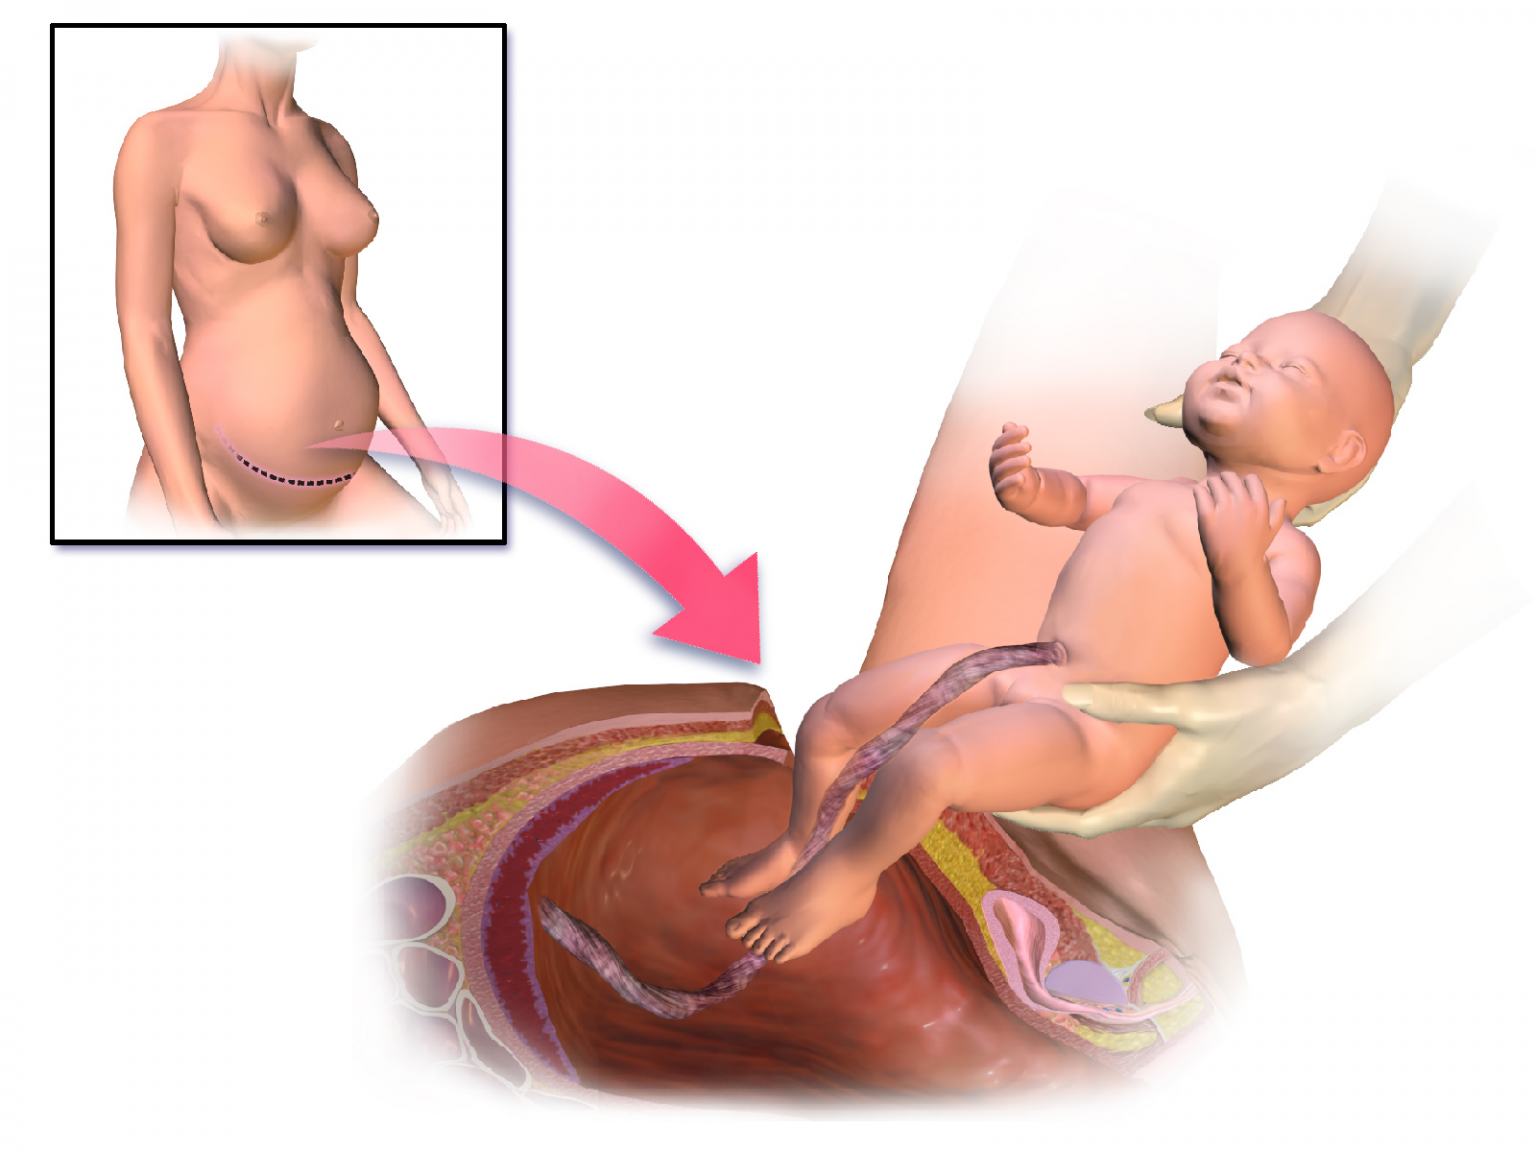 Сколько по времени операция кесарево сечения. Рождение ребенка кесарево сечение. Родоразрешение кесарево сечение. Разрез после кесарева сечения.